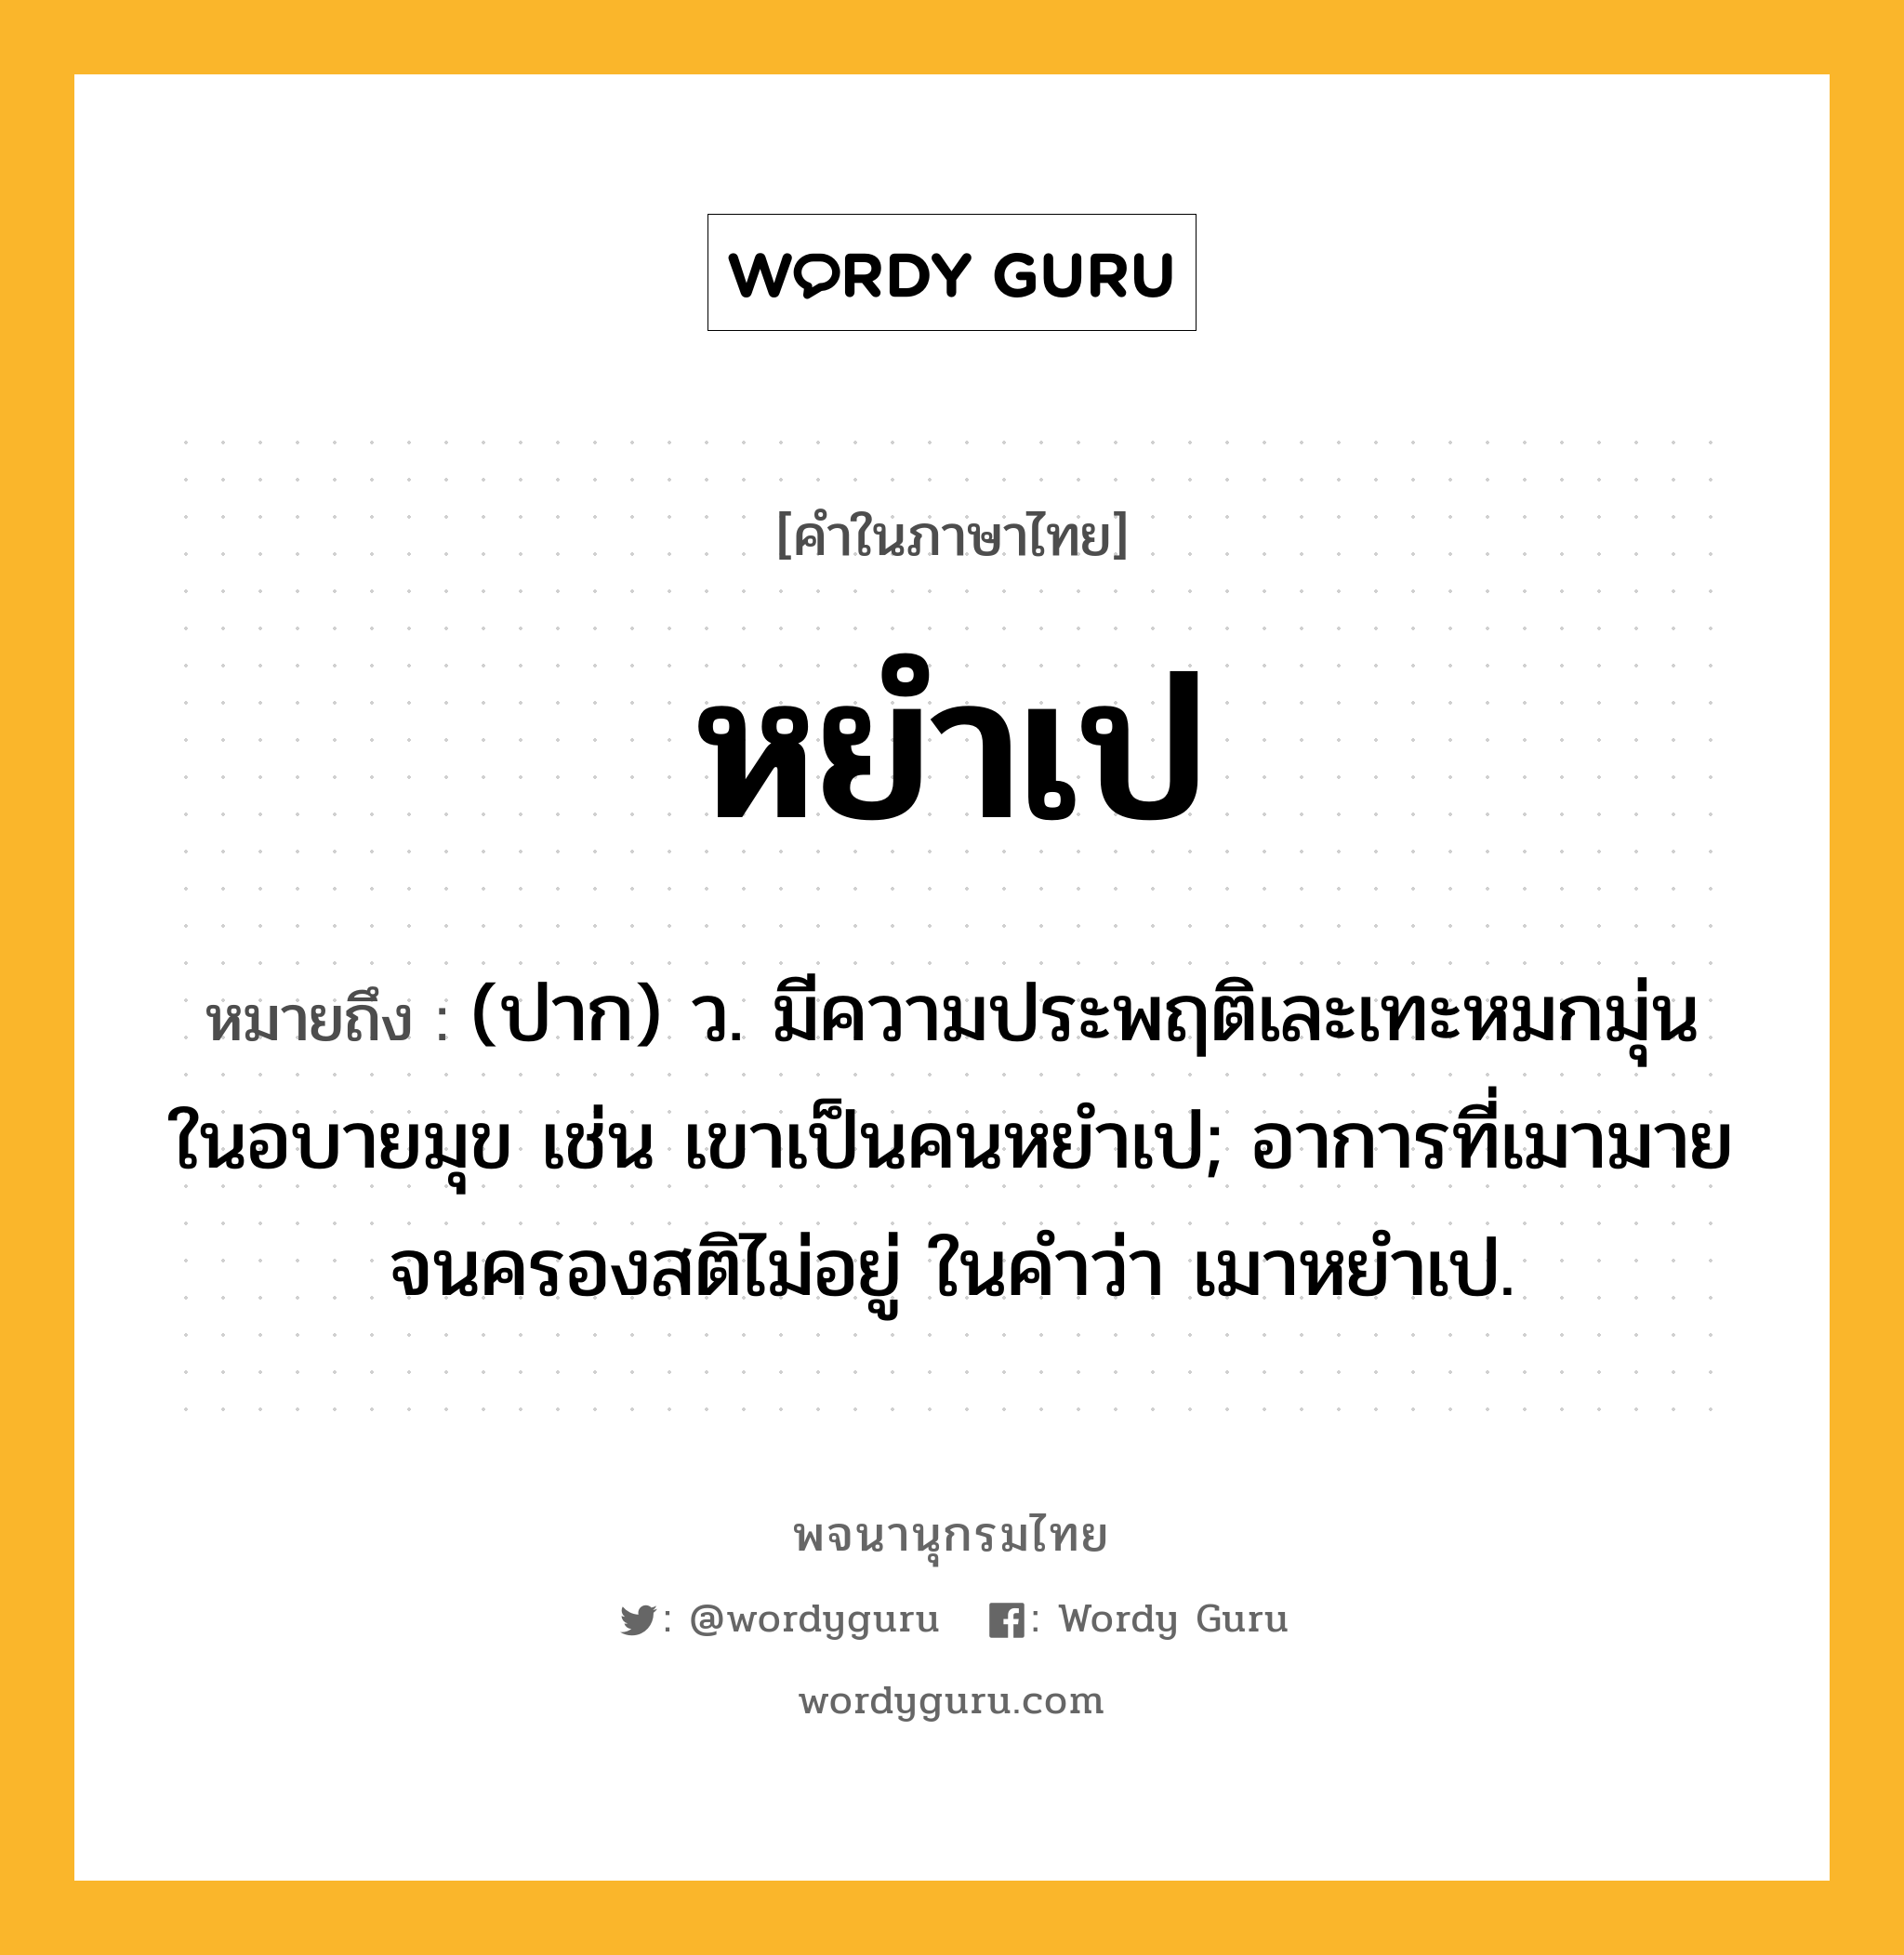 หยำเป หมายถึงอะไร?, คำในภาษาไทย หยำเป หมายถึง (ปาก) ว. มีความประพฤติเละเทะหมกมุ่นในอบายมุข เช่น เขาเป็นคนหยำเป; อาการที่เมามายจนครองสติไม่อยู่ ในคำว่า เมาหยําเป.